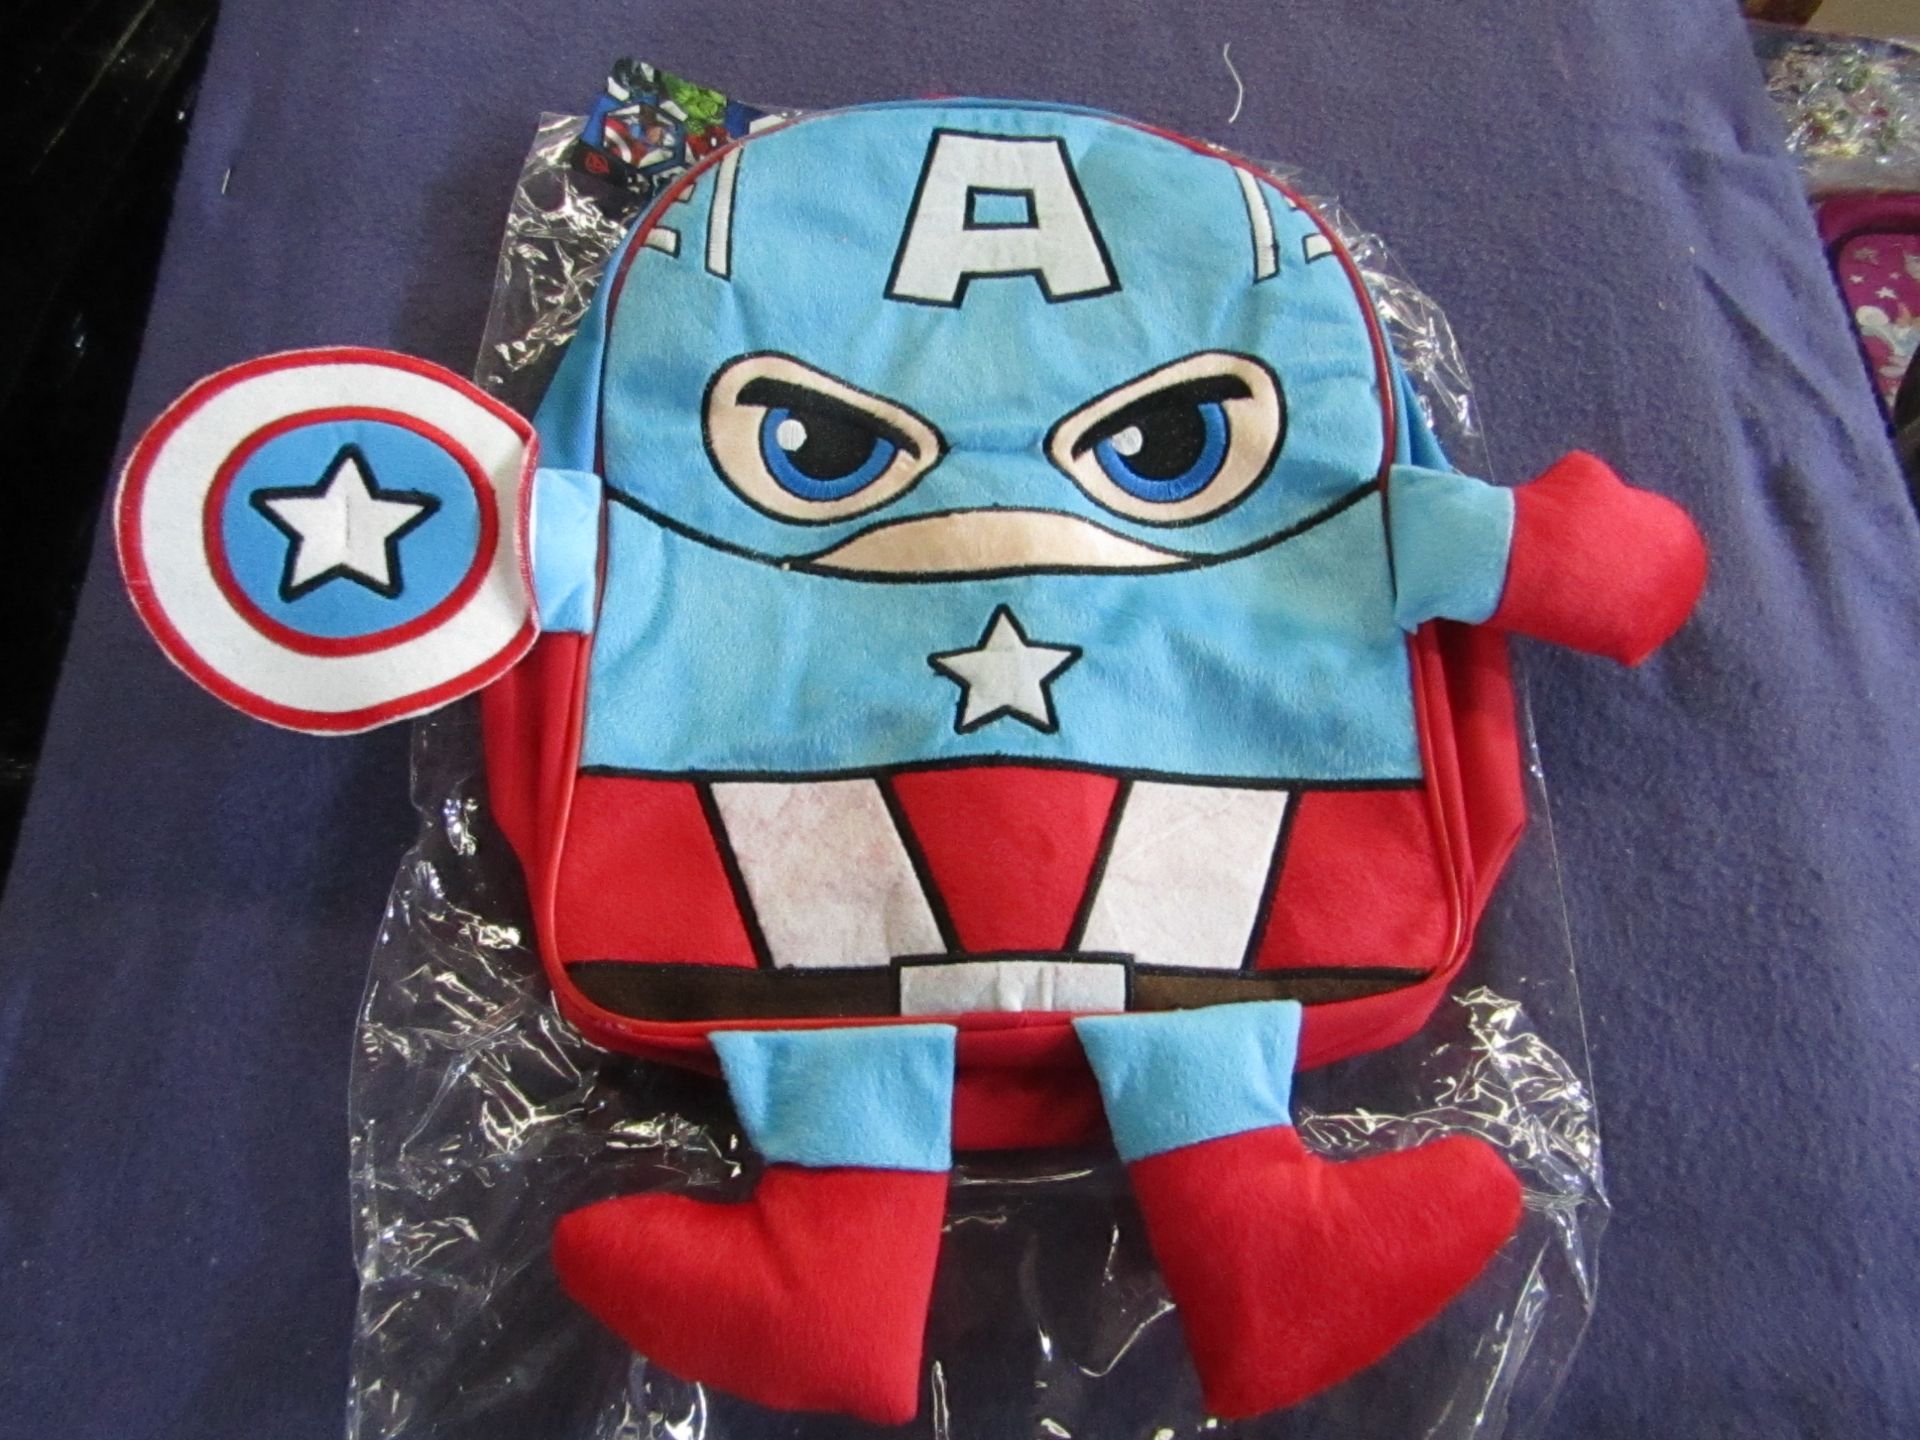 Captain America - 3D Backpack - Unused & Packaged.